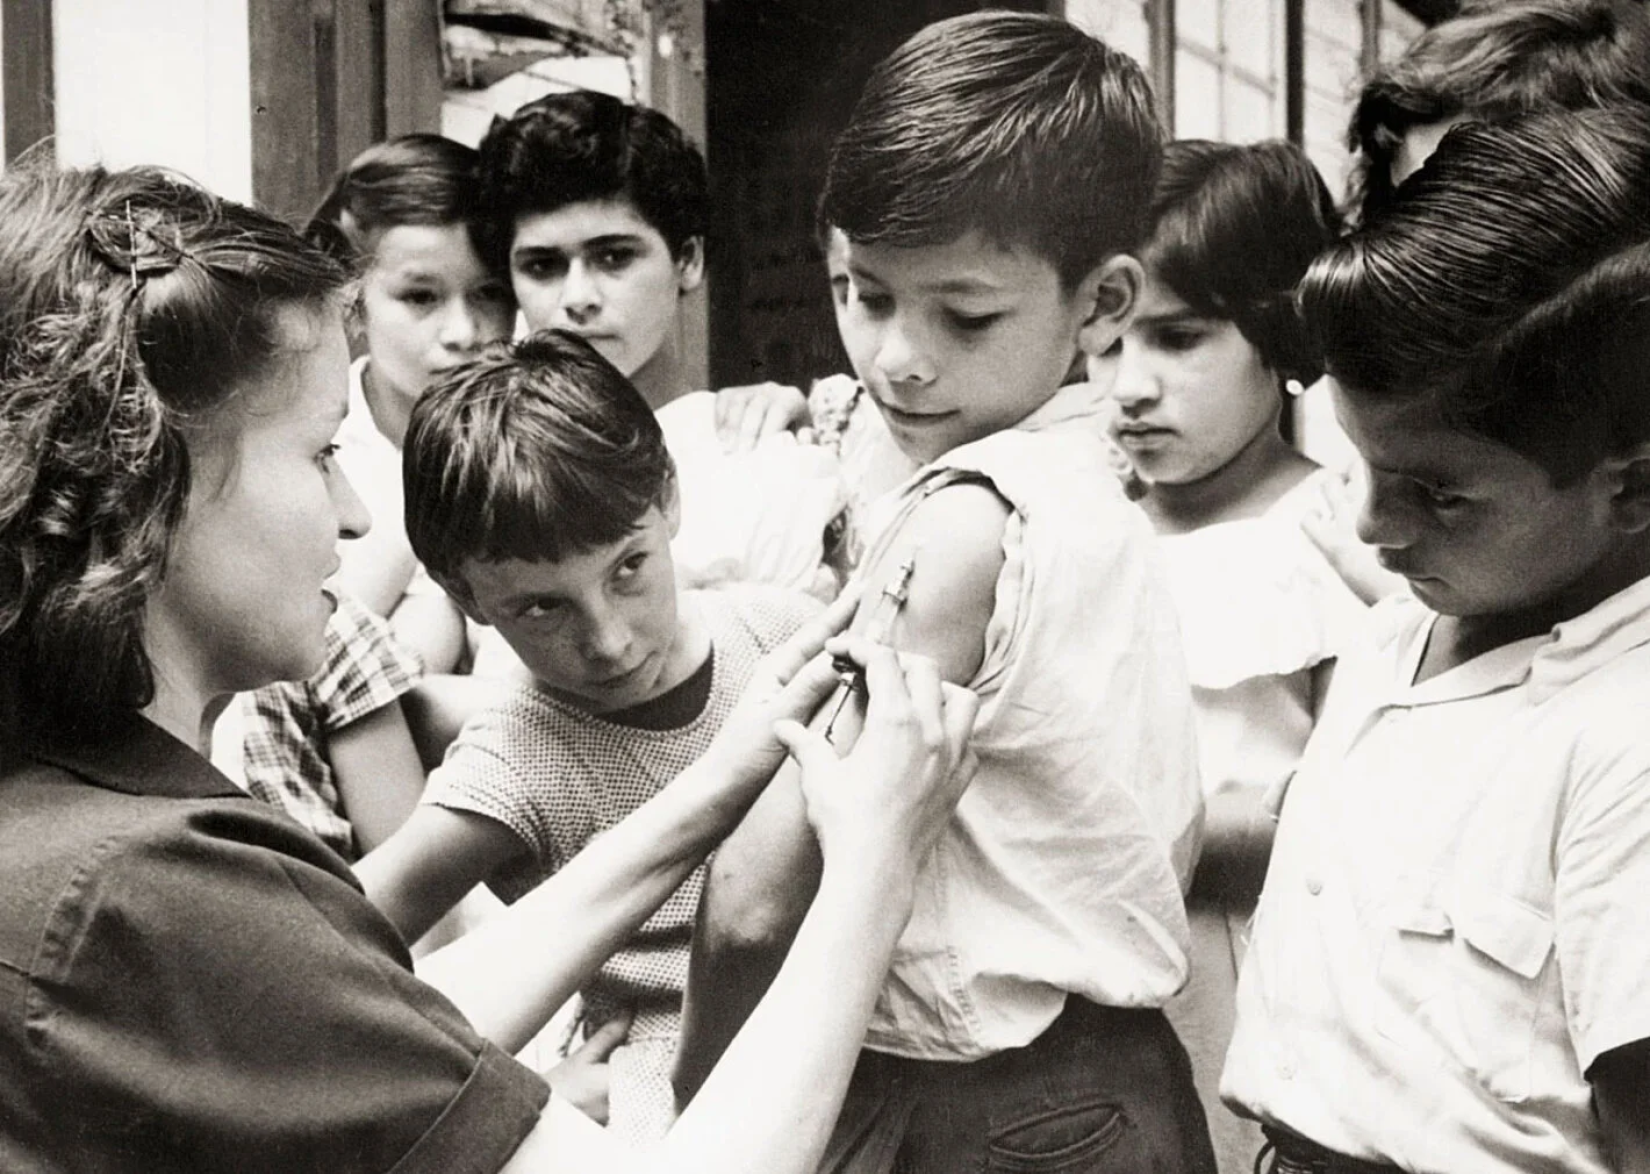 Vaccination of school children